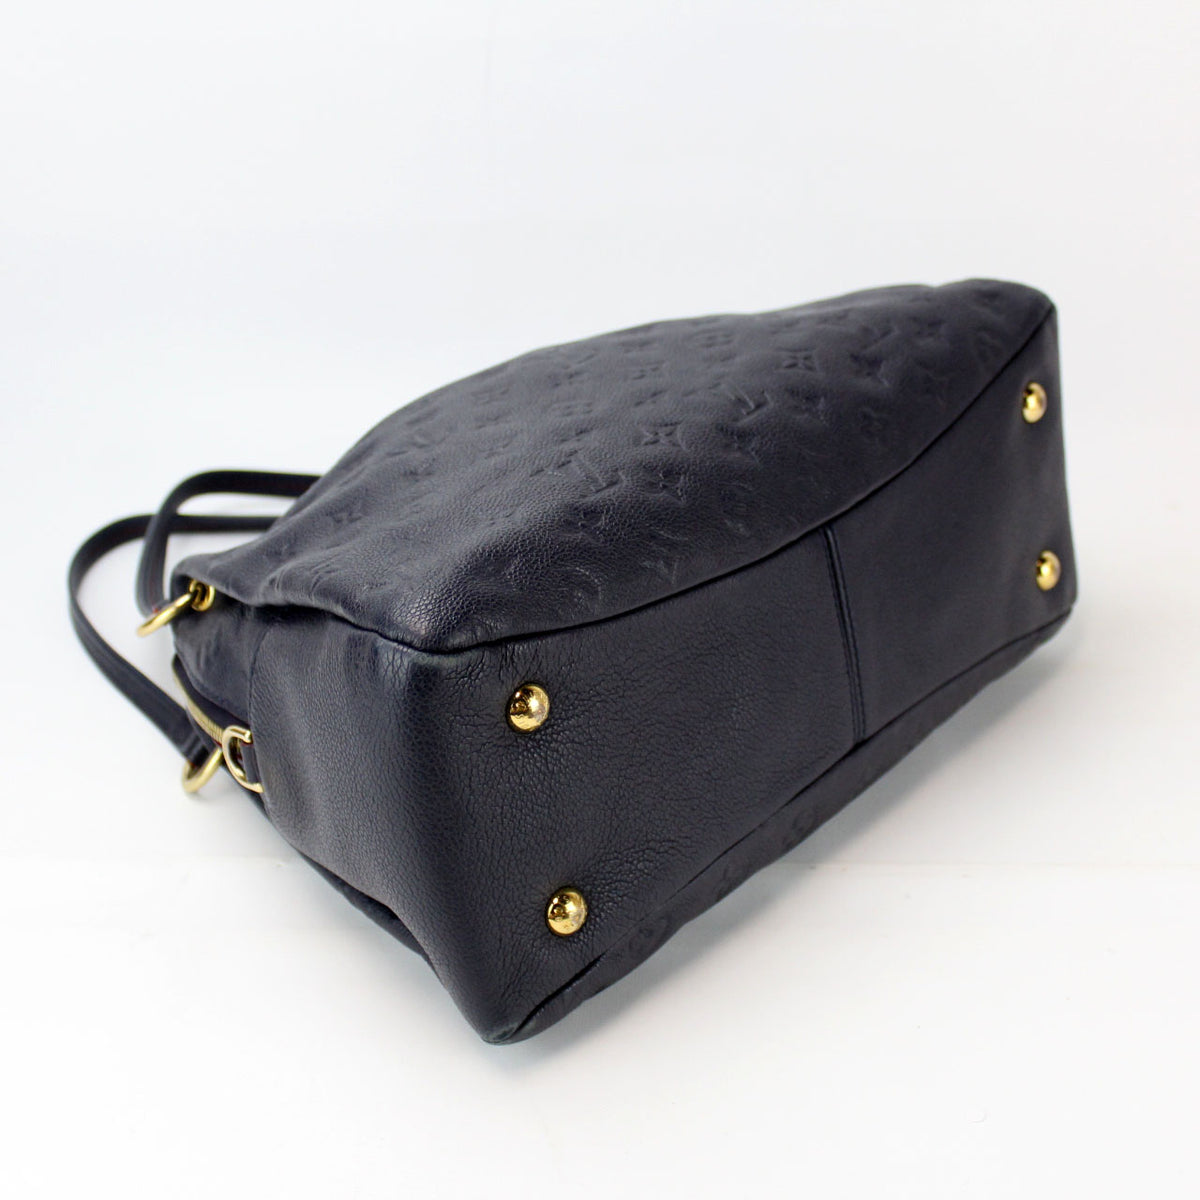 Ponthieu PM Empreinte (PL4) – Keeks Designer Handbags